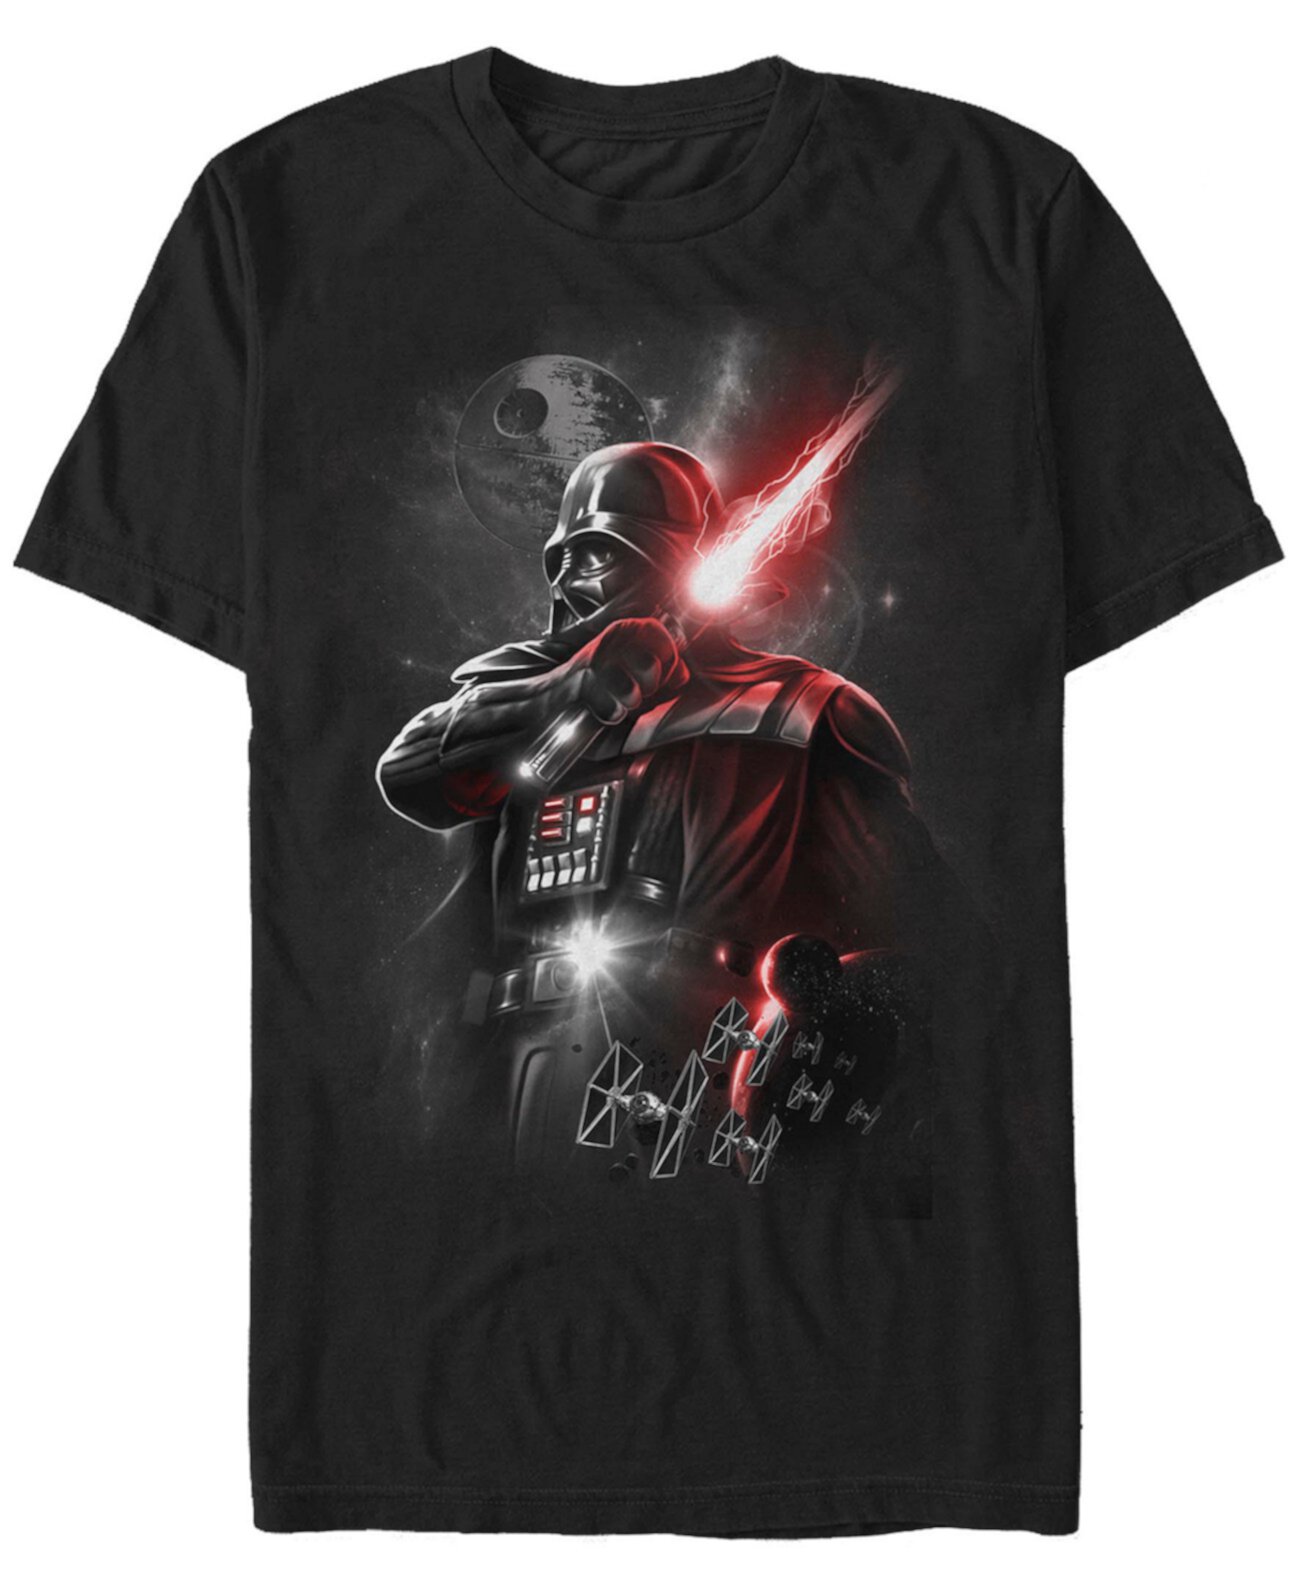 Мужская футболка с коротким рукавом с изображением светового меча Star Wars Darth Vader FIFTH SUN